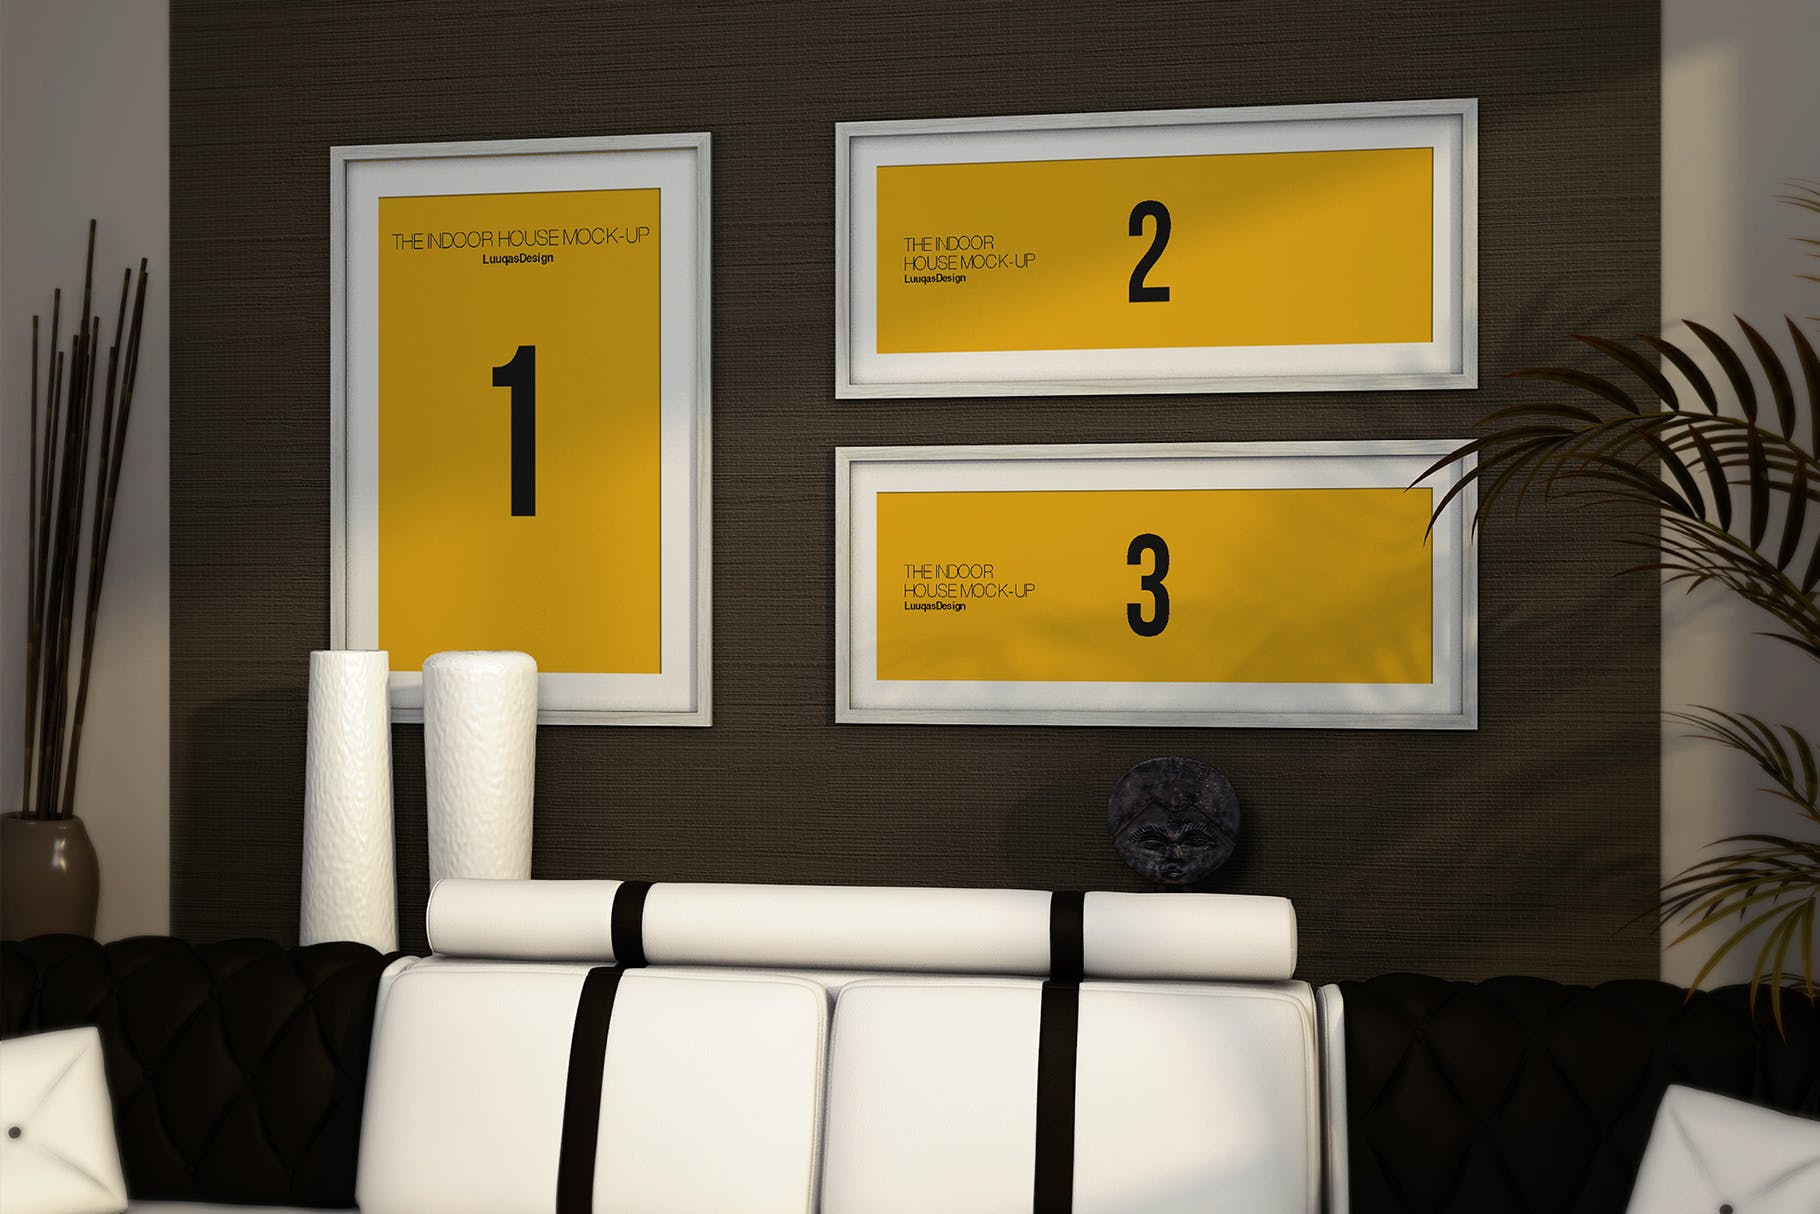 室内装饰画框艺术创作预览样机模板素材 Indoor House MockUp Templates插图5